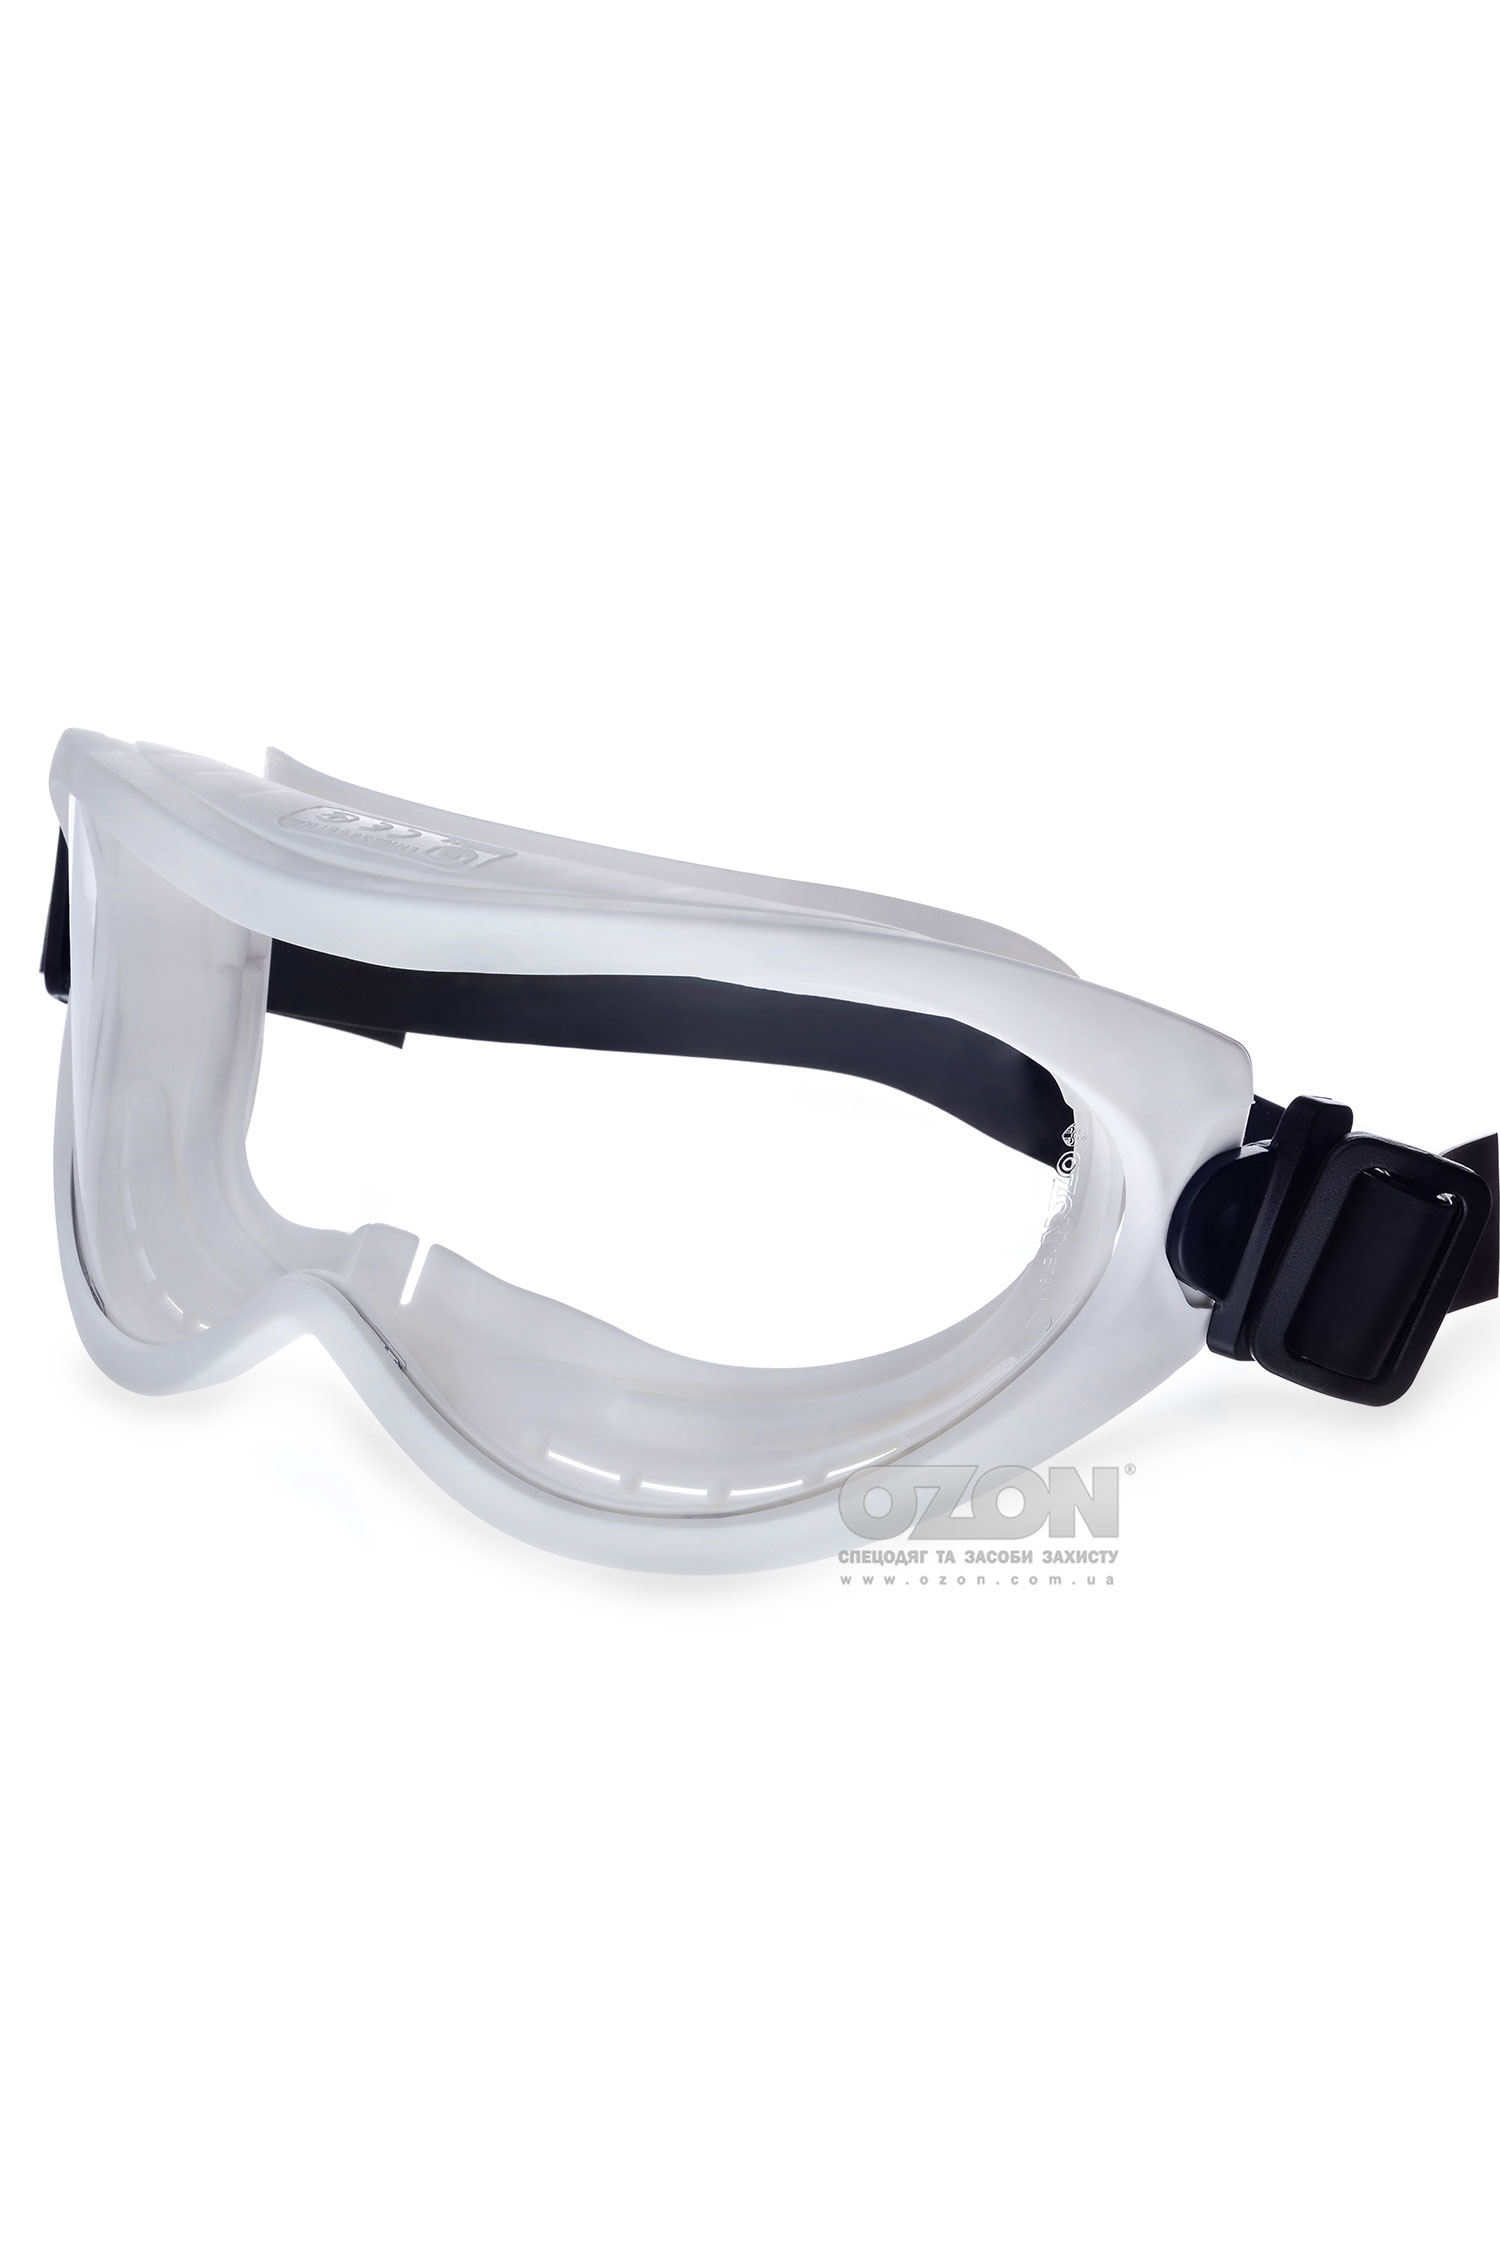 Защитные очки OZON™ 7-100, автоклавируемые - Фото 1